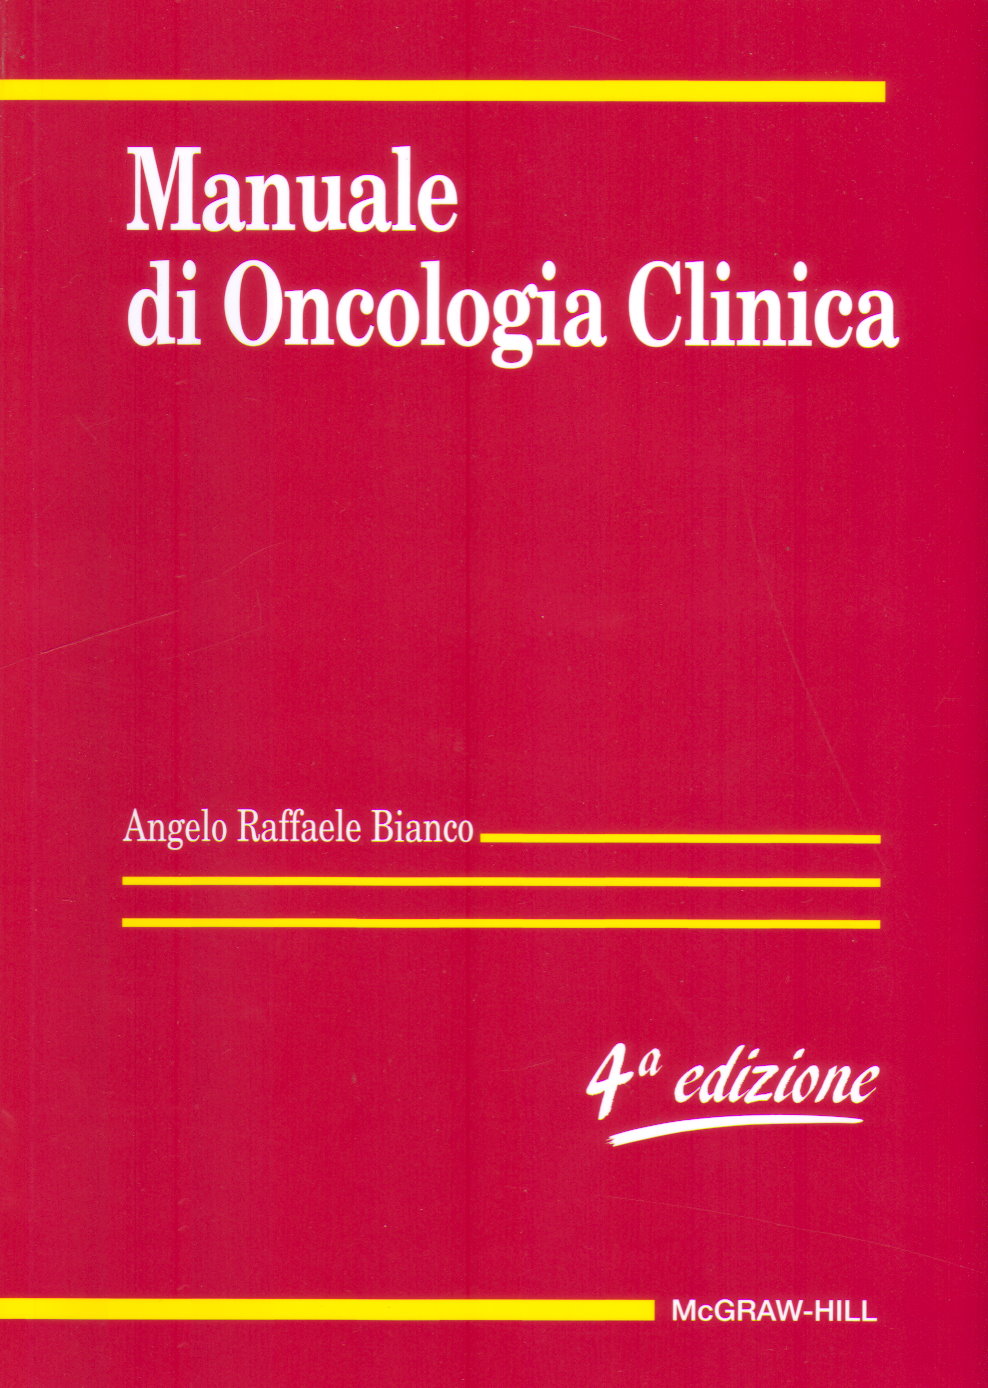 Manuale di Oncologia Clinica 4/ed + IN IN OMAGGIO "ACRONIMI IN MEDICINA" DI SEGEN (mg3951, 10 euro)